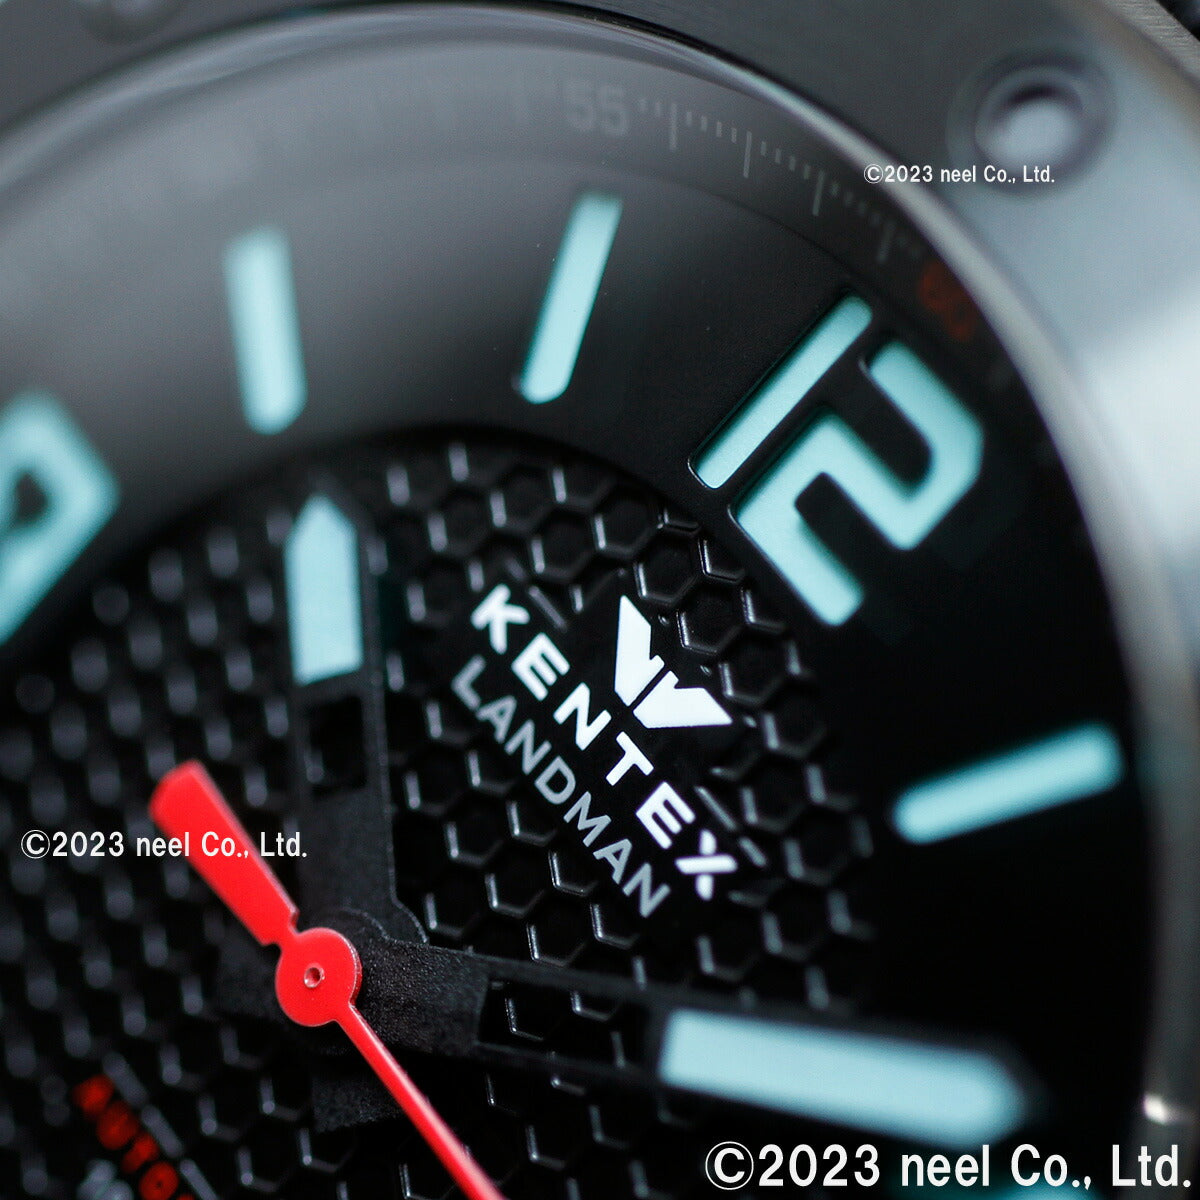 ケンテックス KENTEX 限定モデル 腕時計 時計 メンズ ランドマン アドベンチャー デイト 日本製 S763X-1